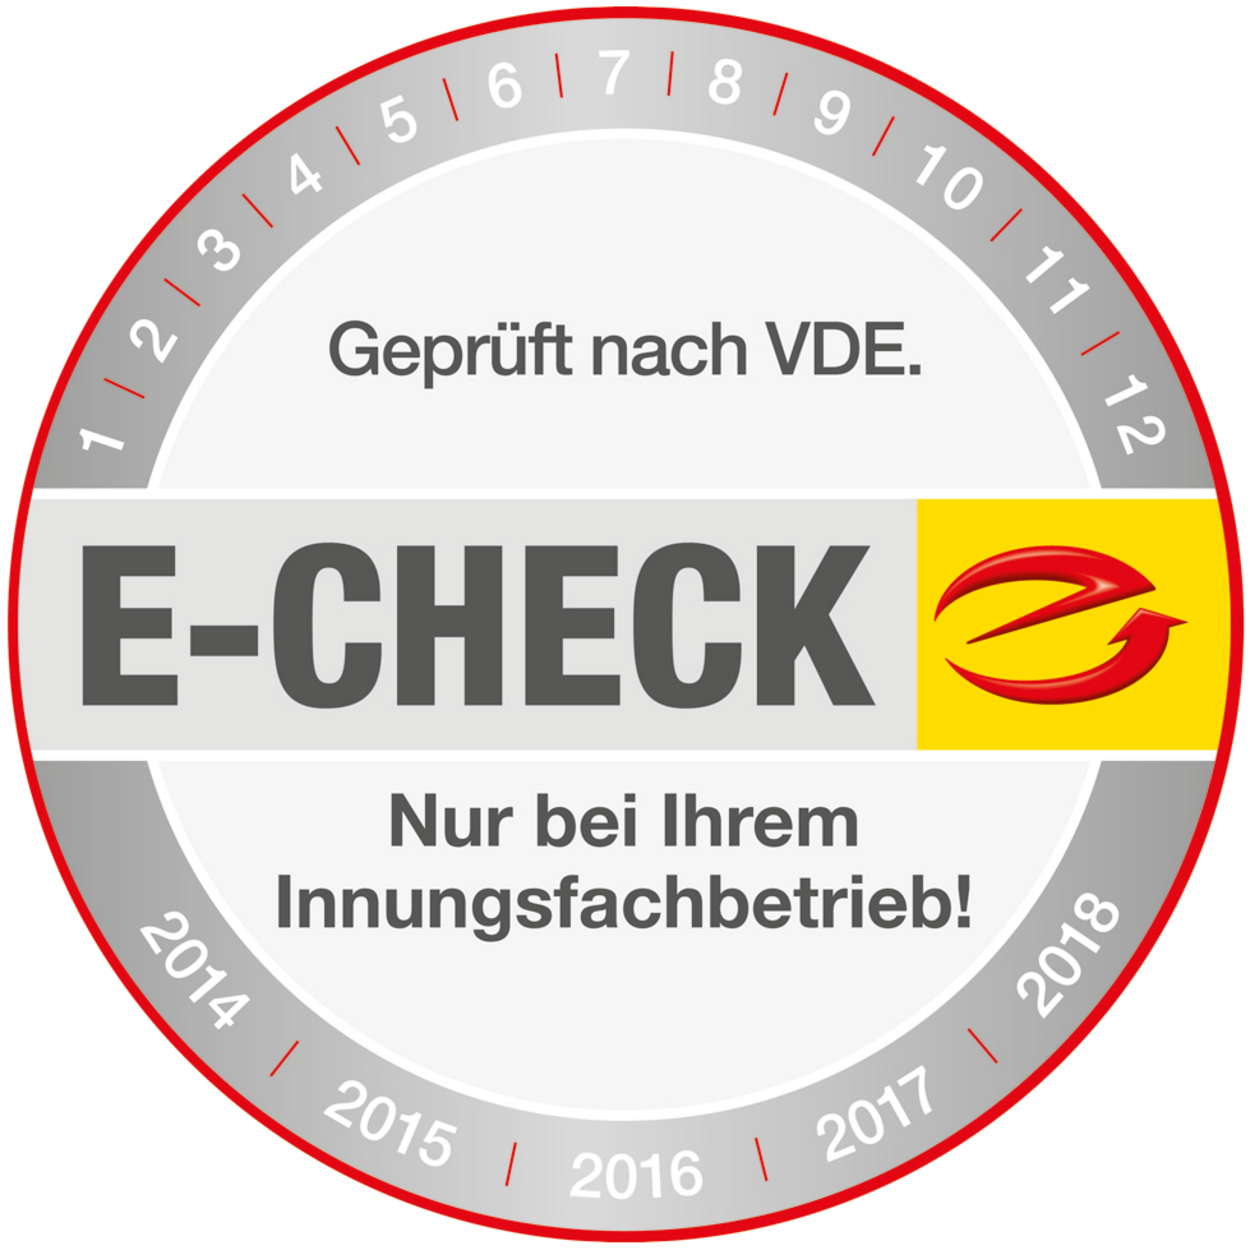 Der E-Check bei Hans-Dieter & Maik Zoberbier GbR in Luckenwalde